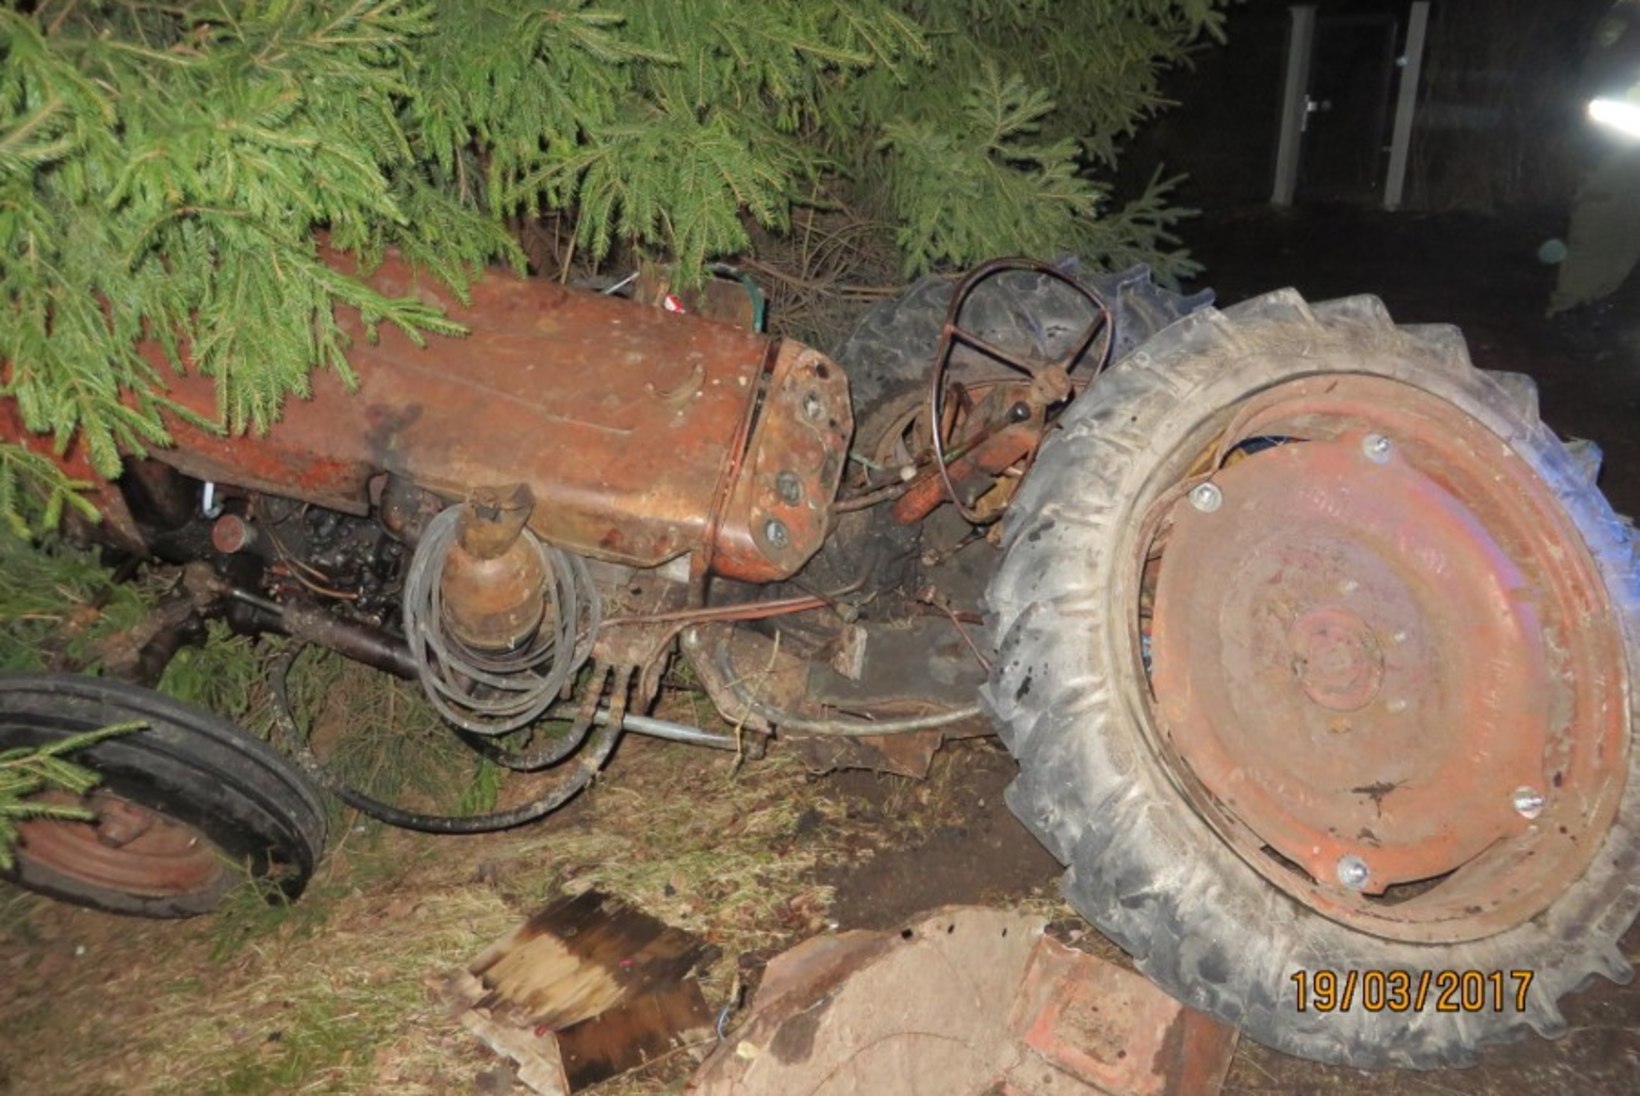 Politseiauto otsasõit traktorile: operatiivsõiduki kiirus oli lubatust suurem, alarmi ei kasutatud